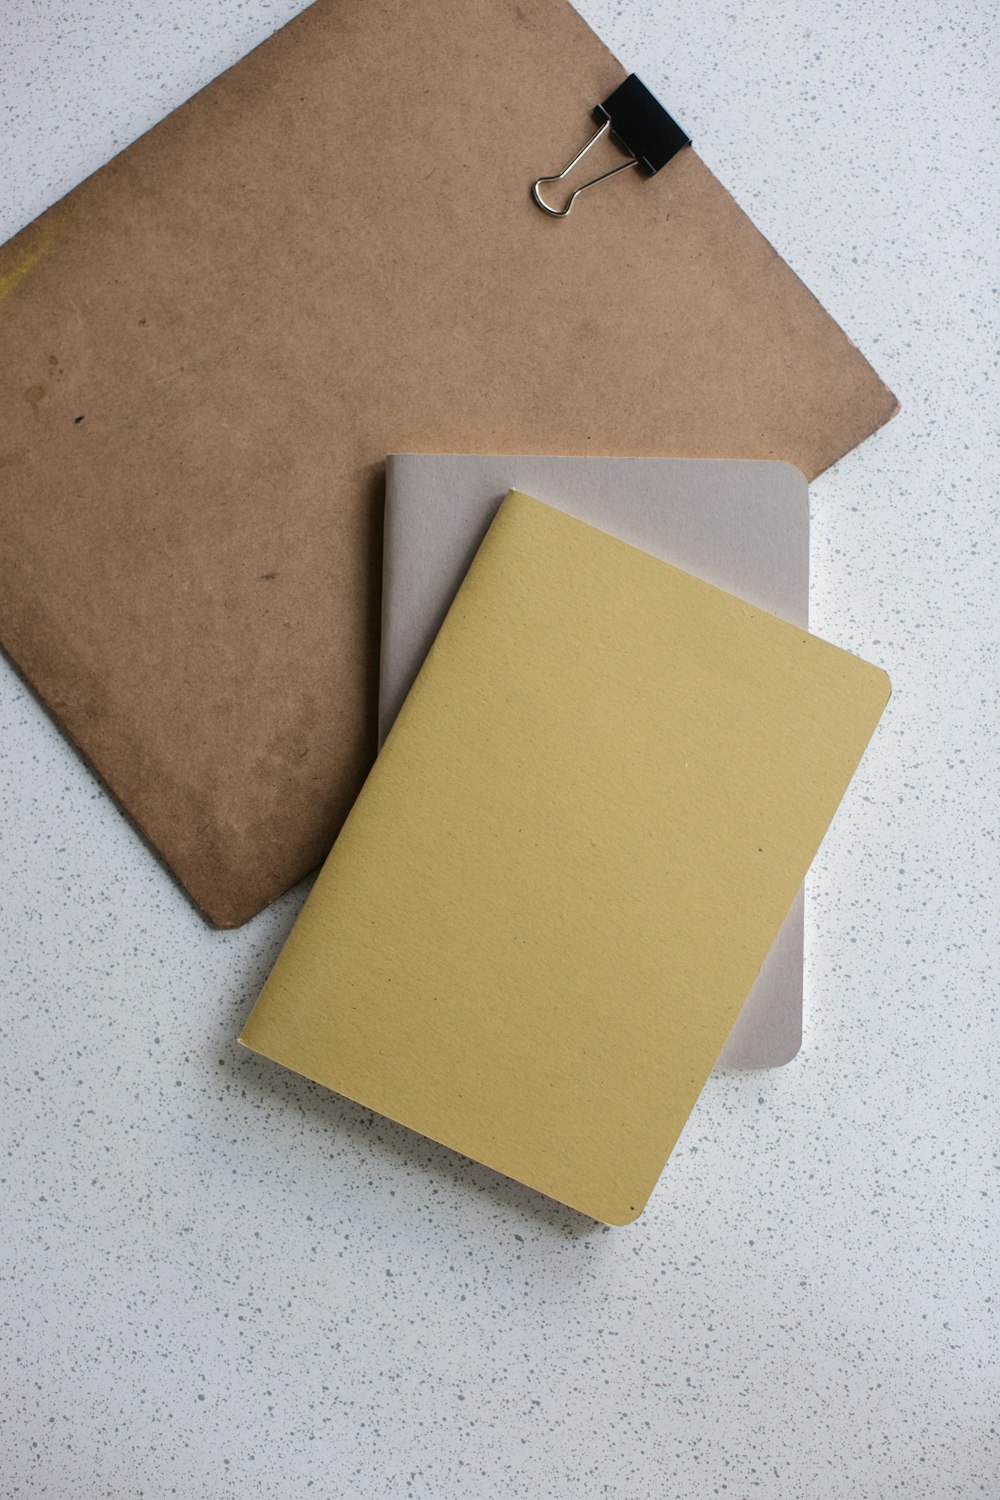 Livre relié souple jaune et gris près du presse-papiers marron